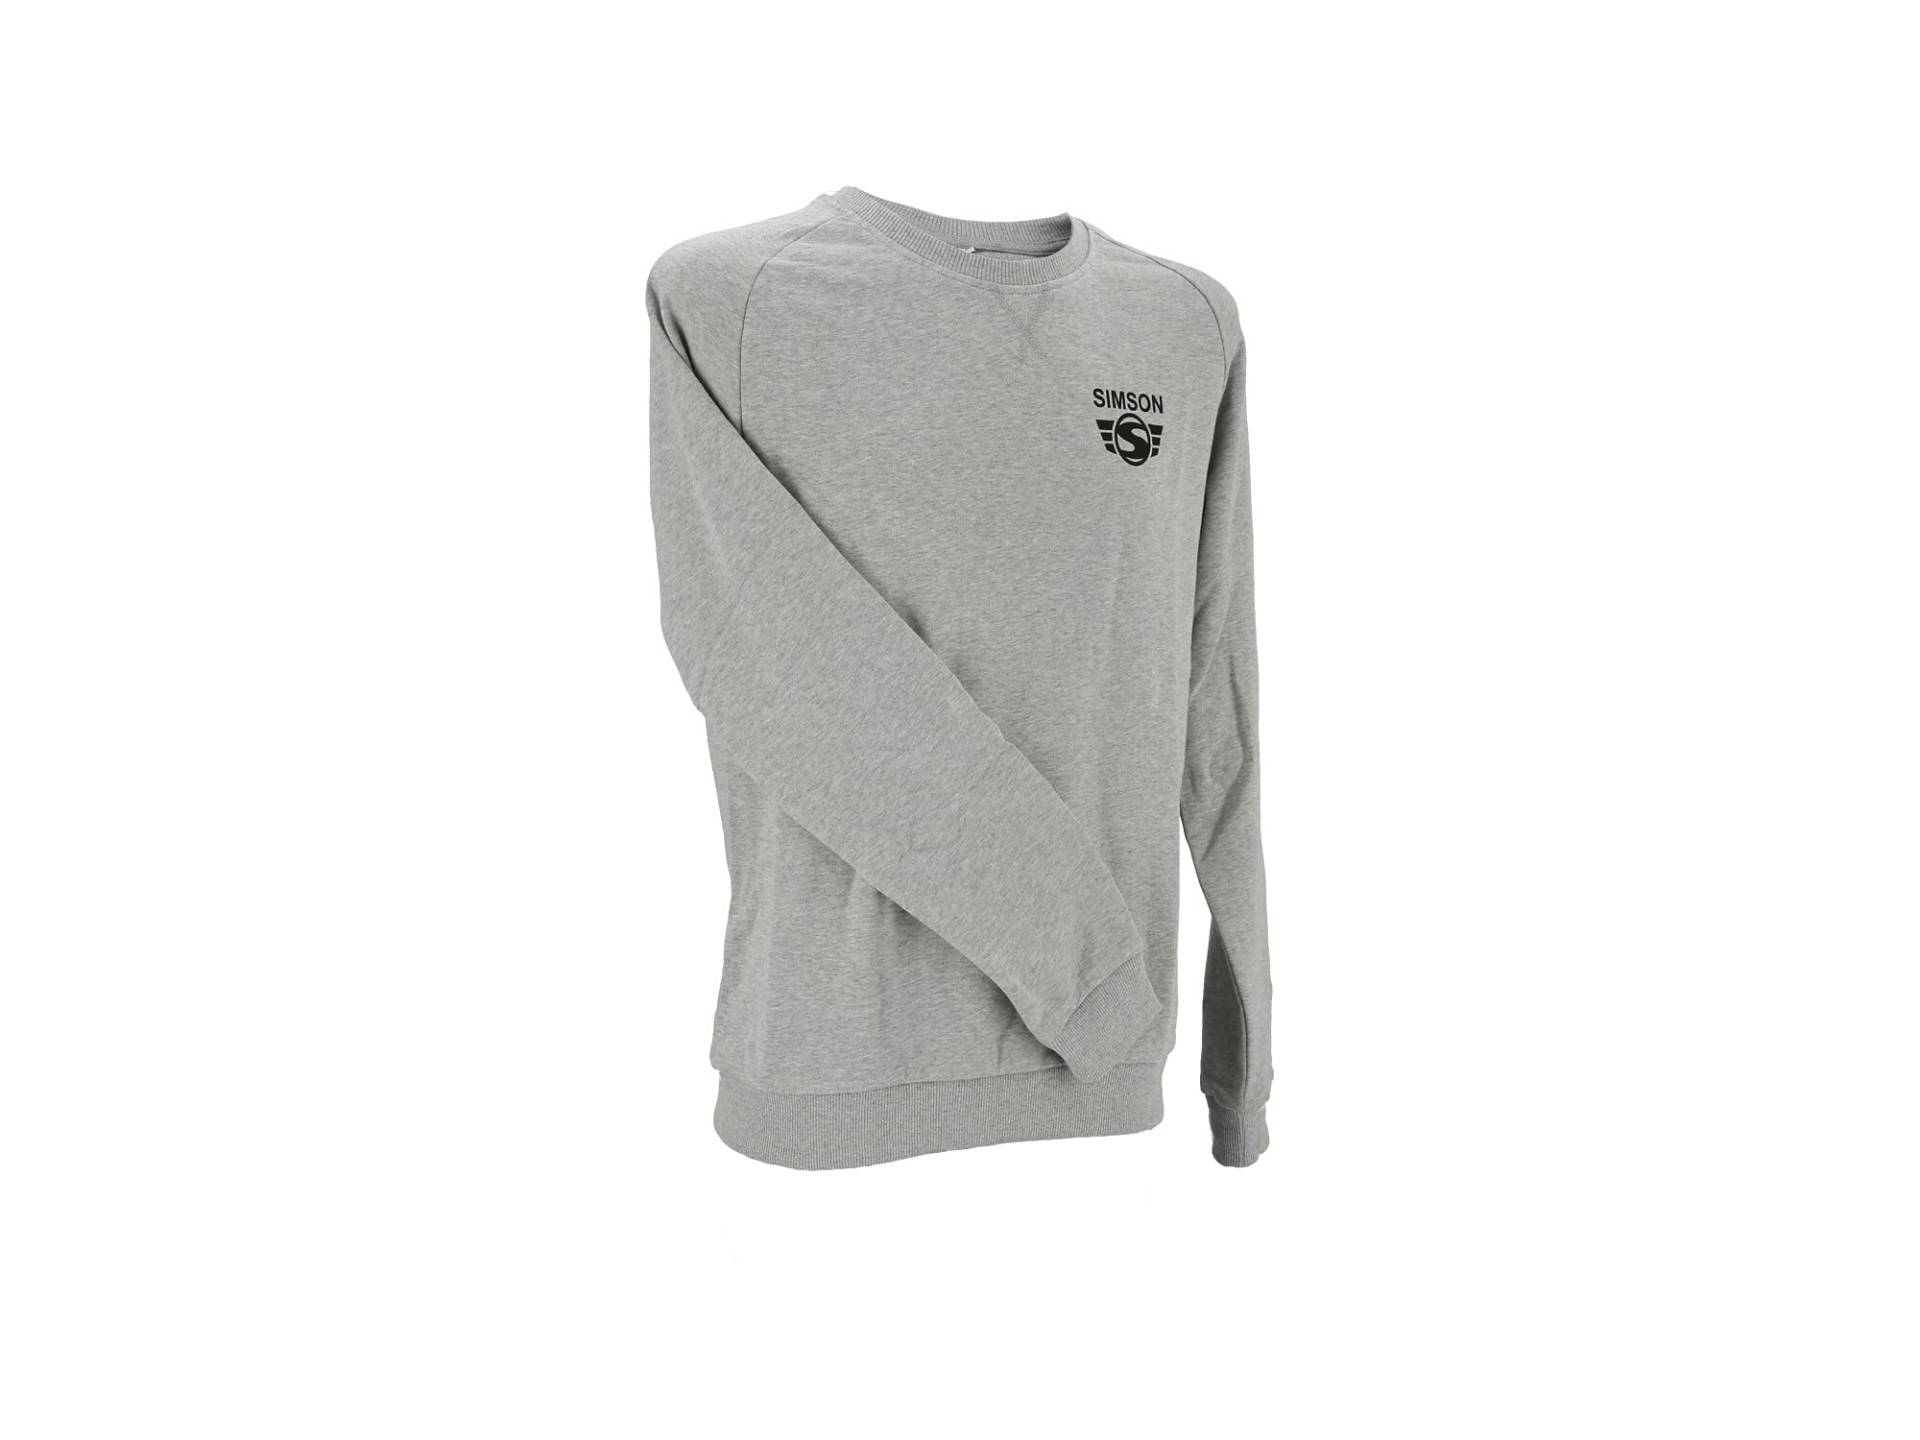 Simson Sweatshirt, Pullover grau meliert mit Logo Print, 100% Baumwolle, original MZA Fan-Artikel, Größen: XS bis XXXL, Größe:L von MZA